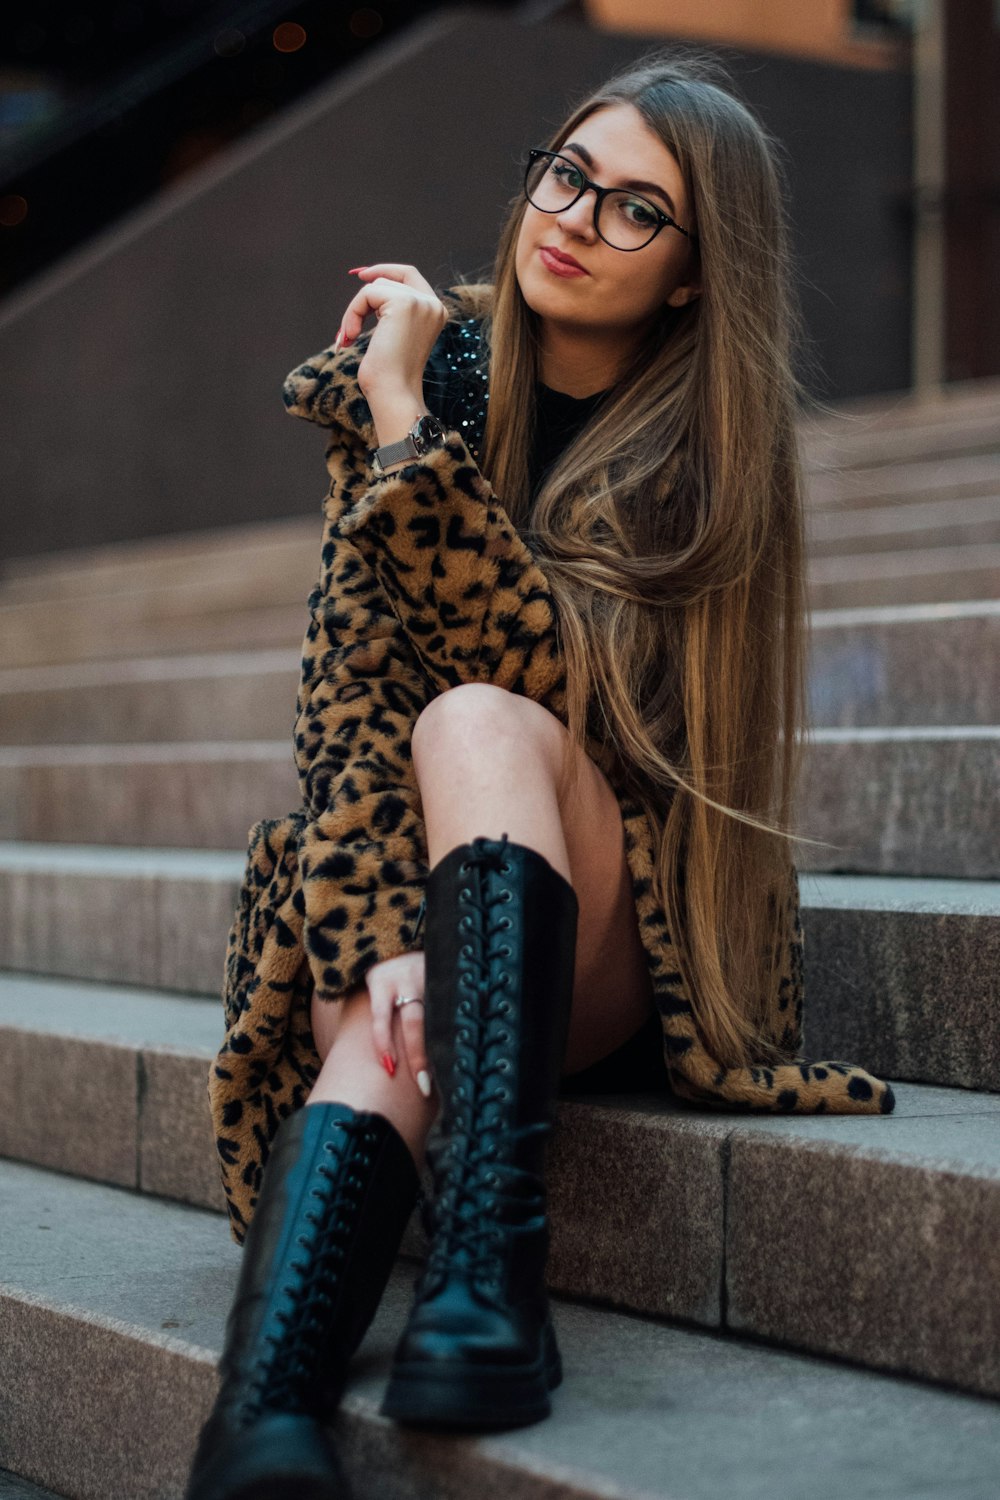 ヒョウ柄のコートと黒いブーツを履いた女性がコンクリートの階段に座っている